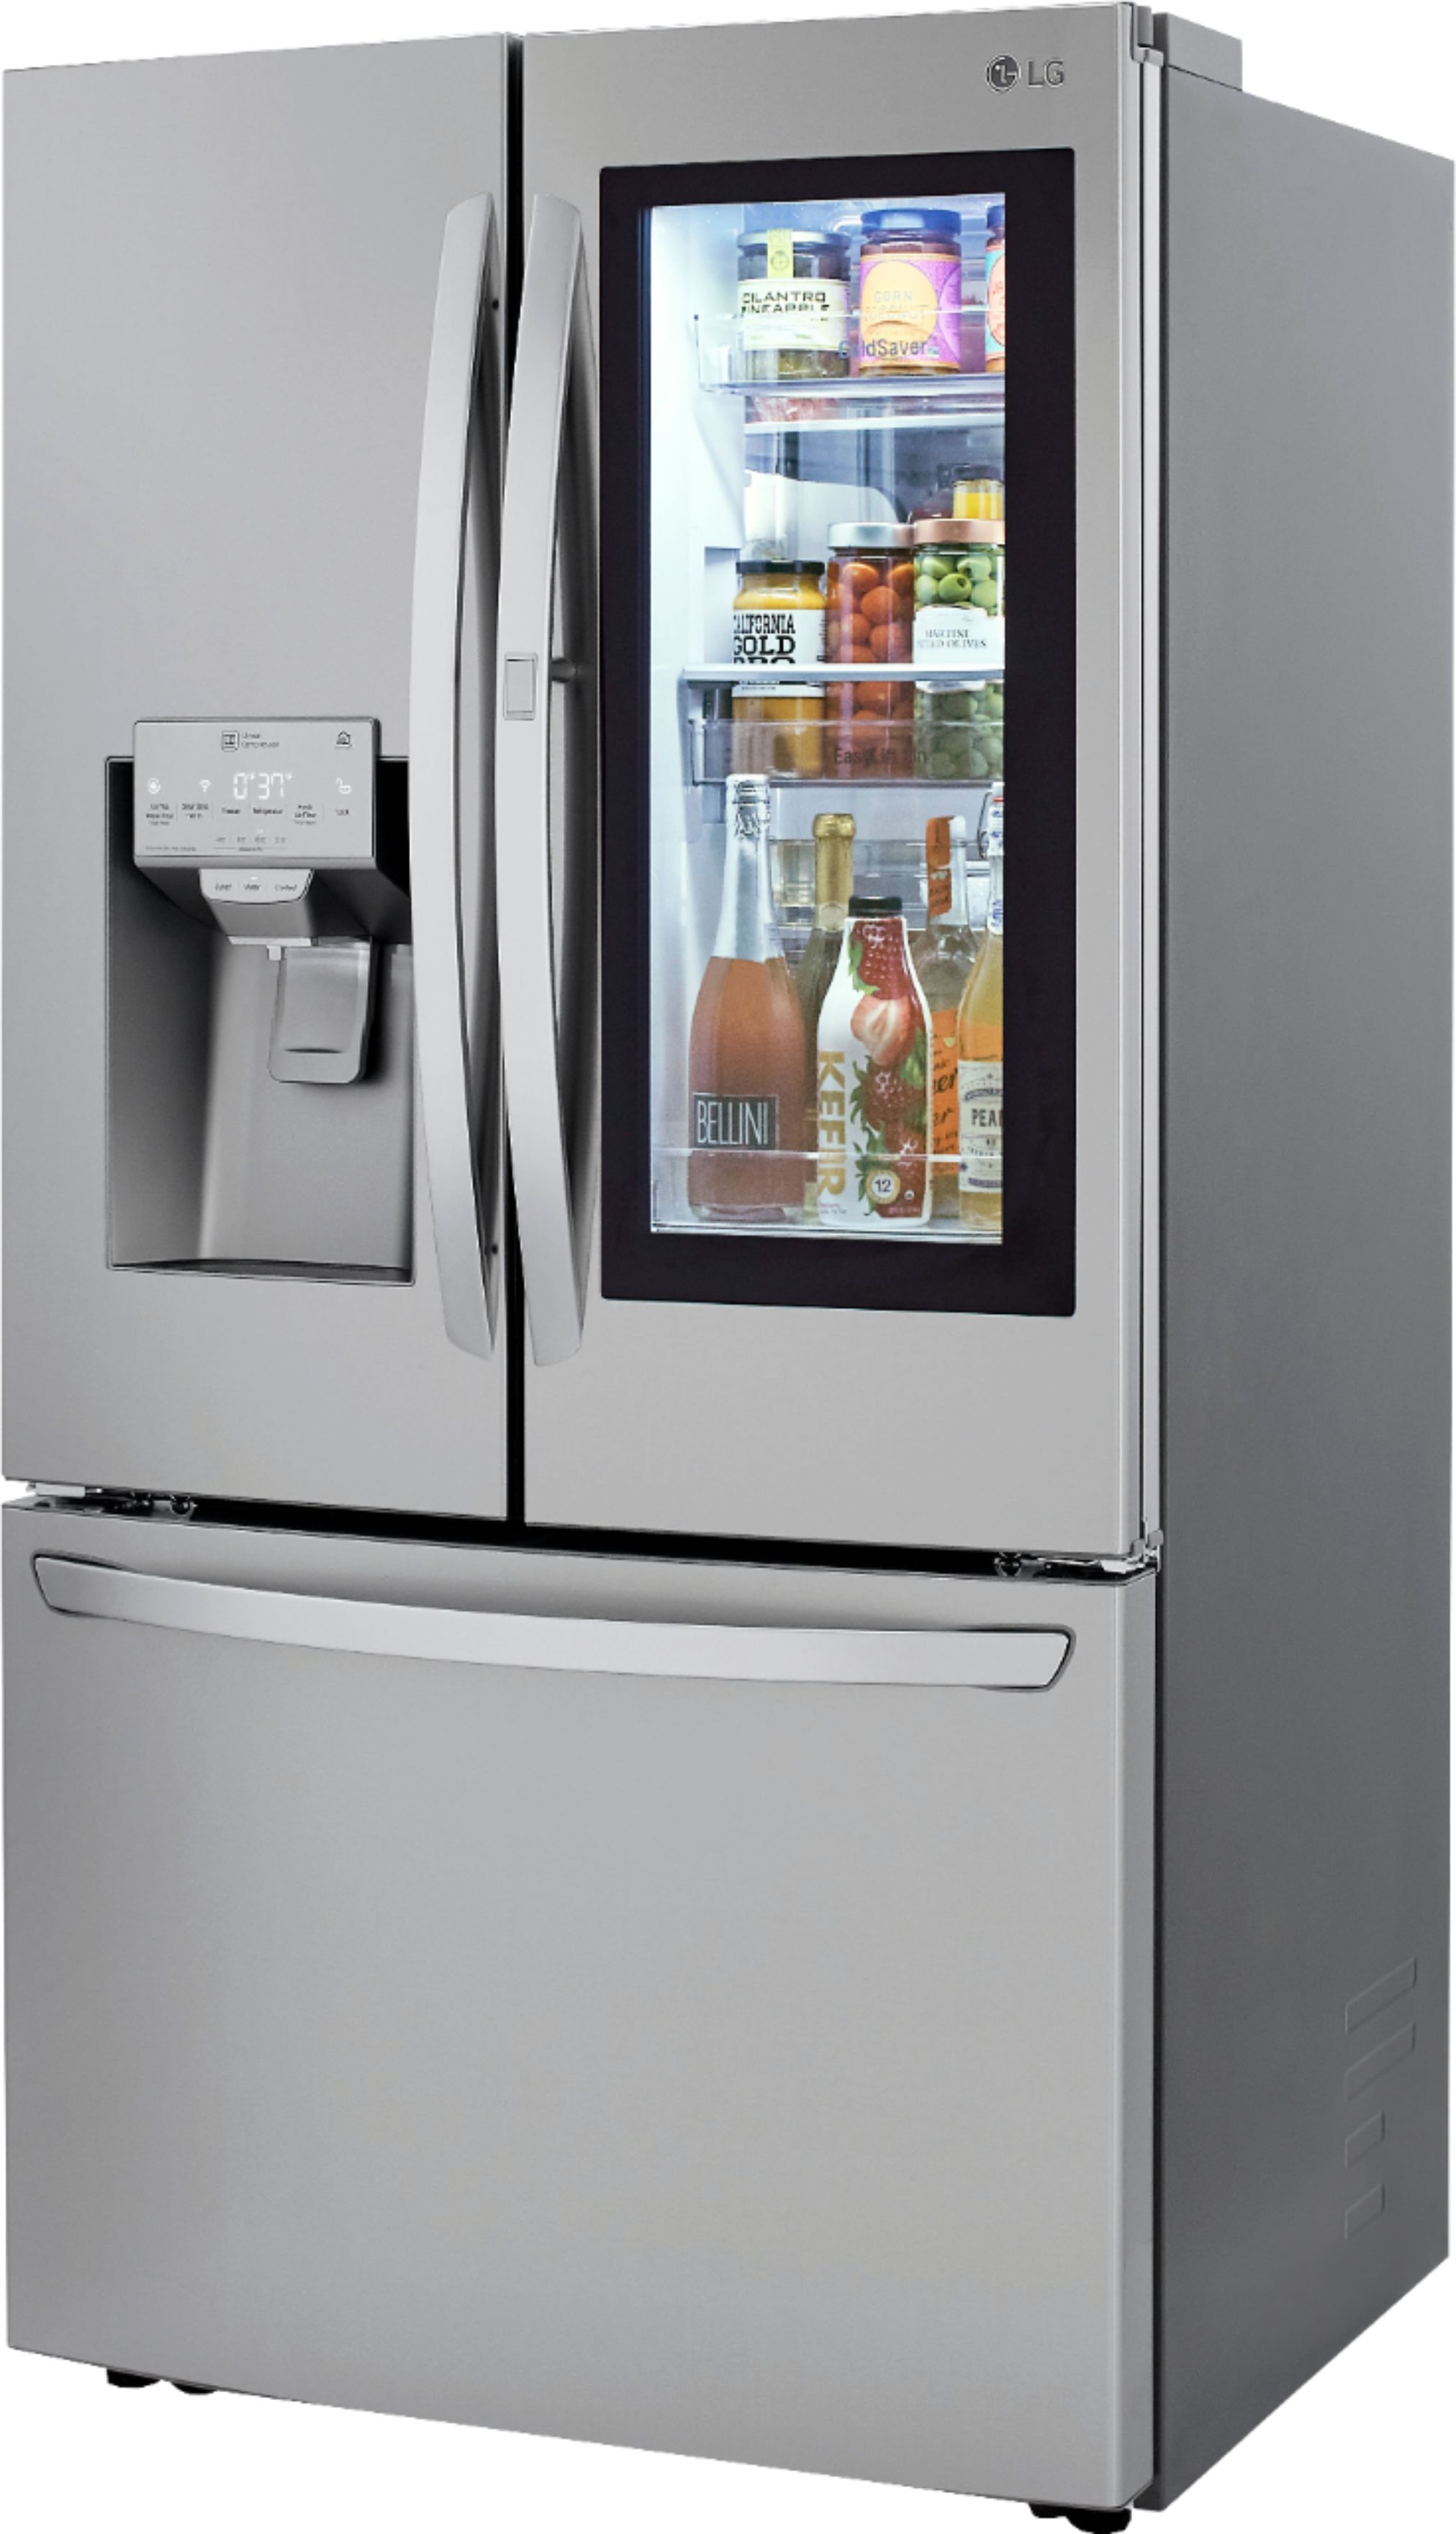 Left View: LG - 23.5 Cu. Ft. French InstaView Door-in-Door Counter-Depth Refrigerator with Craft Ice - Stainless steel